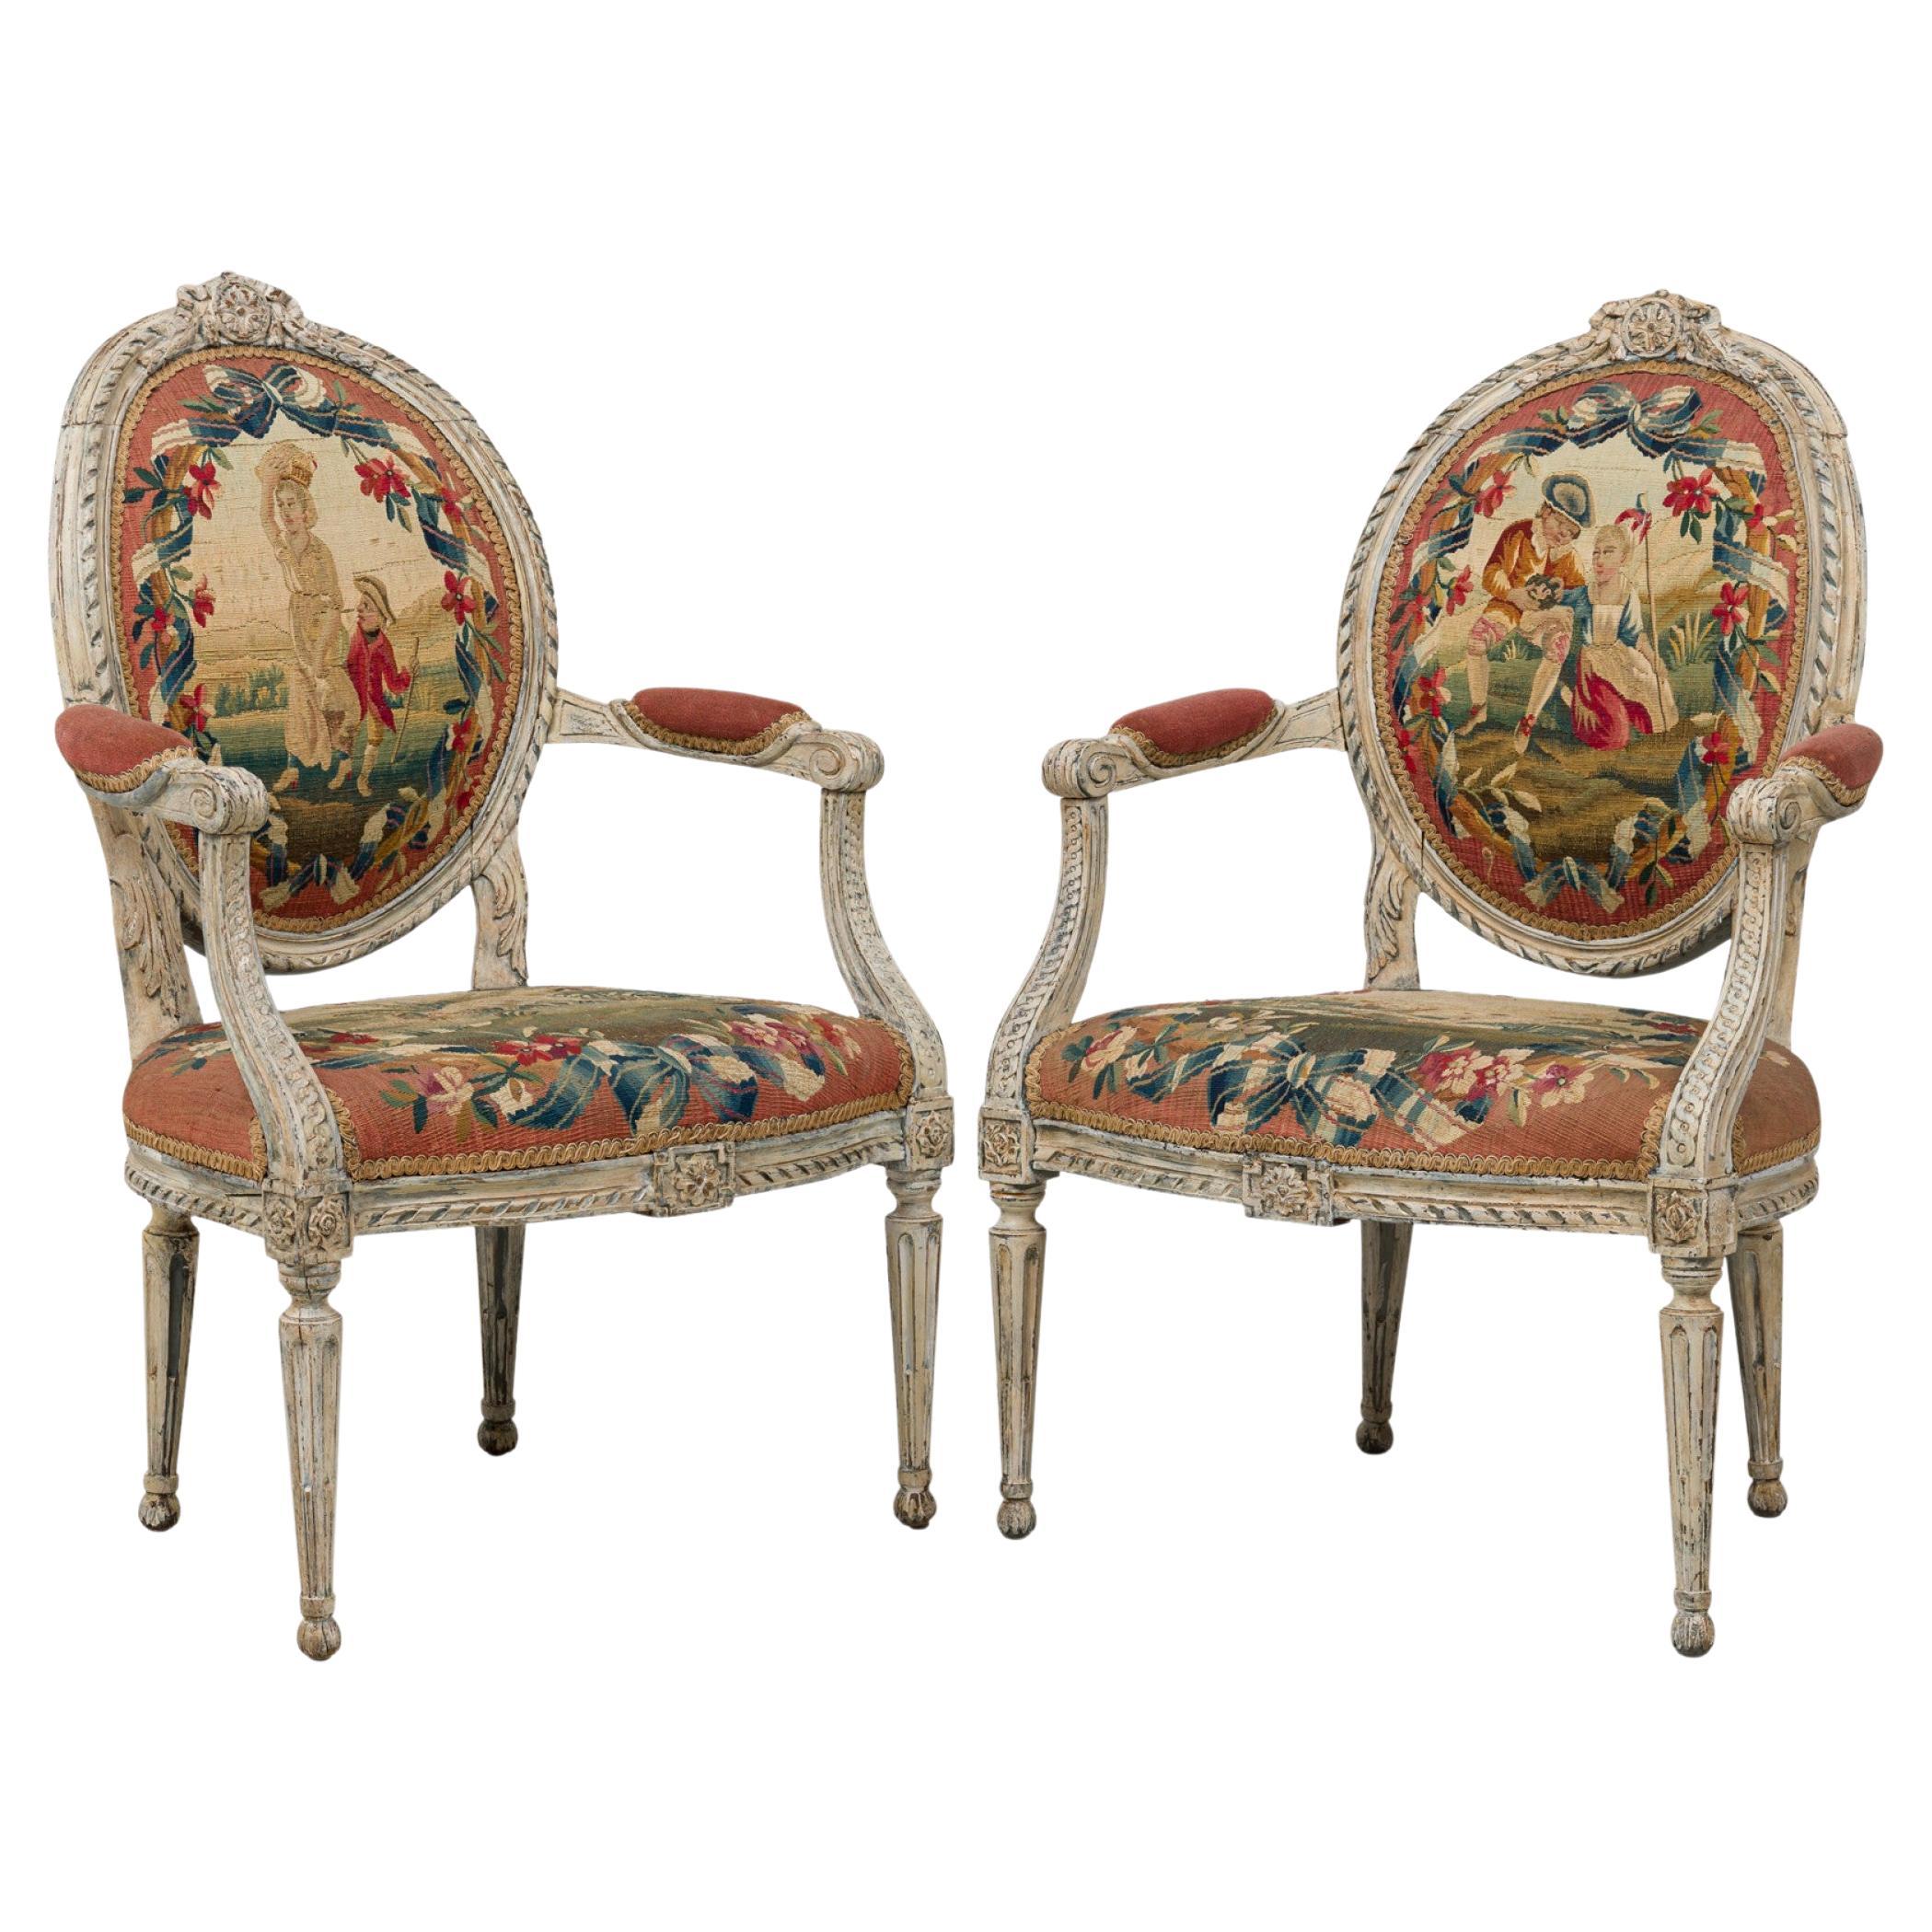 Paire de fauteuils suédois tapissés de tapisserie peinte de style néo-classique